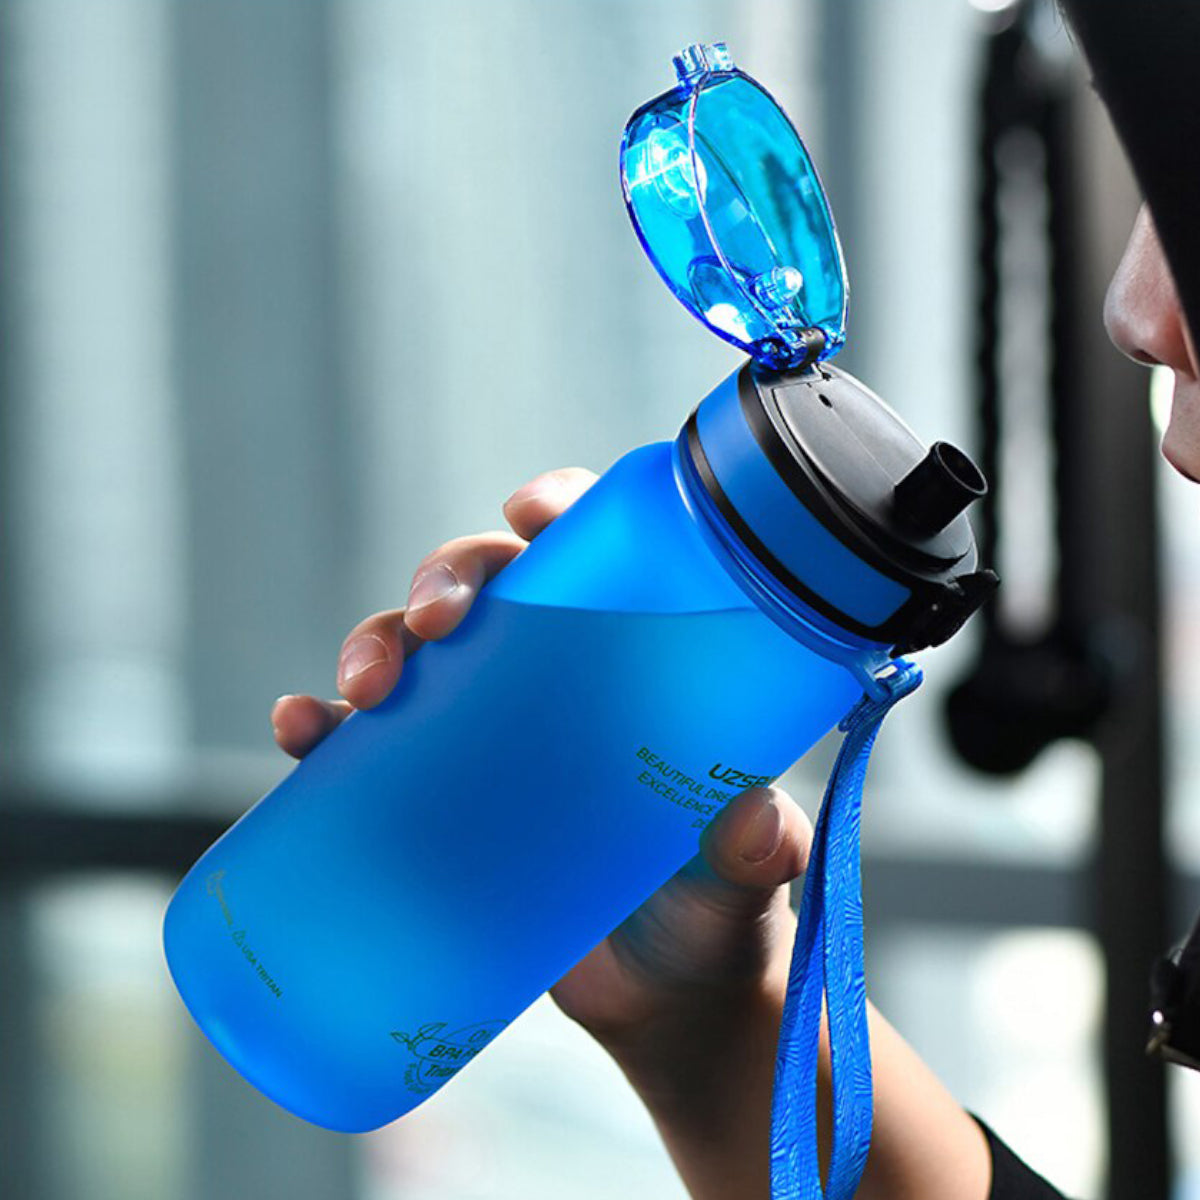 Leak-proof Outdoor Sports Bottle